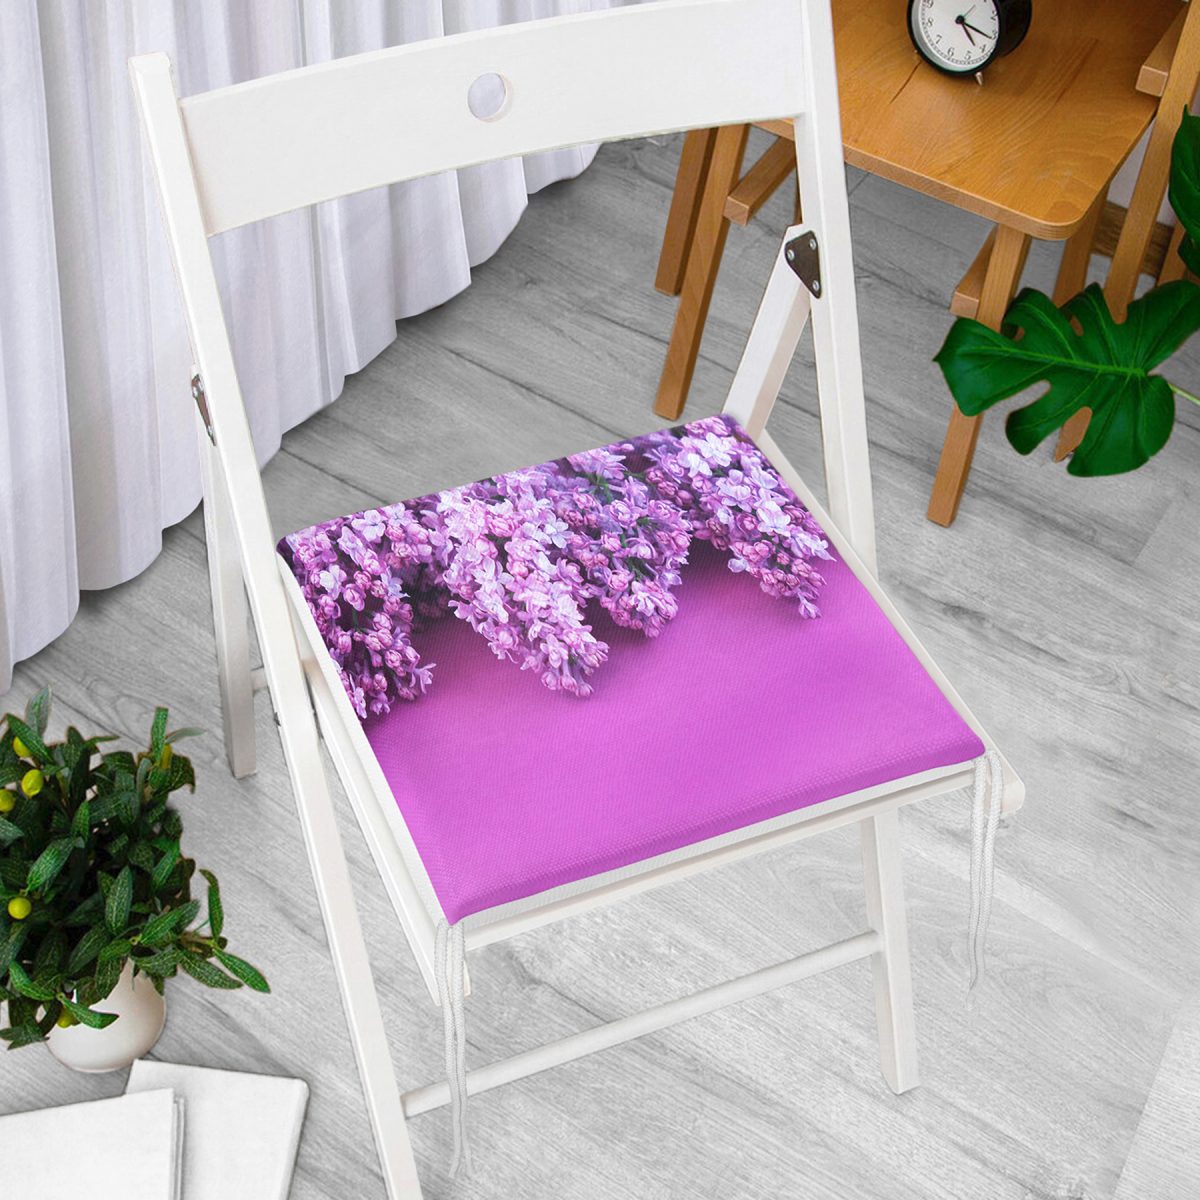 Mor Çiçek Motifli Dijital Baskılı Modern Fermuarlı Sandalye Minderi Realhomes